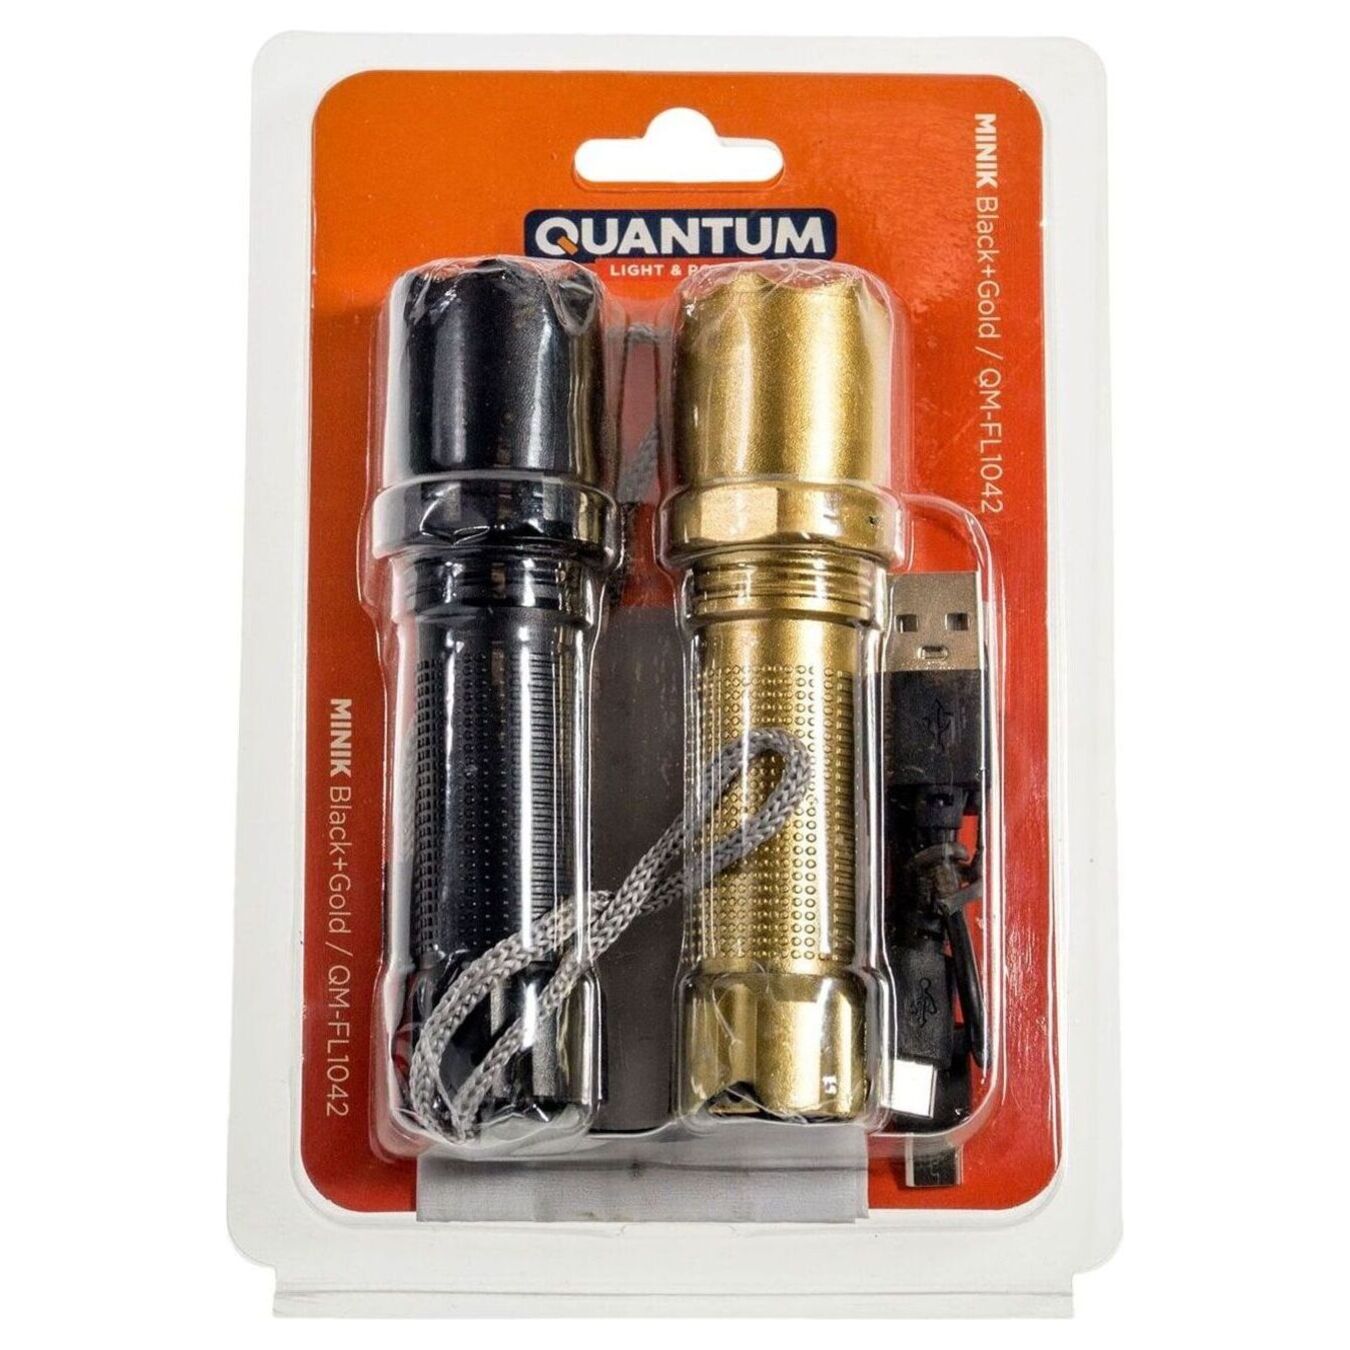 Flashlight Quantum QM-FL1042 Minik black+gold 3W LED with USB 2 pcs